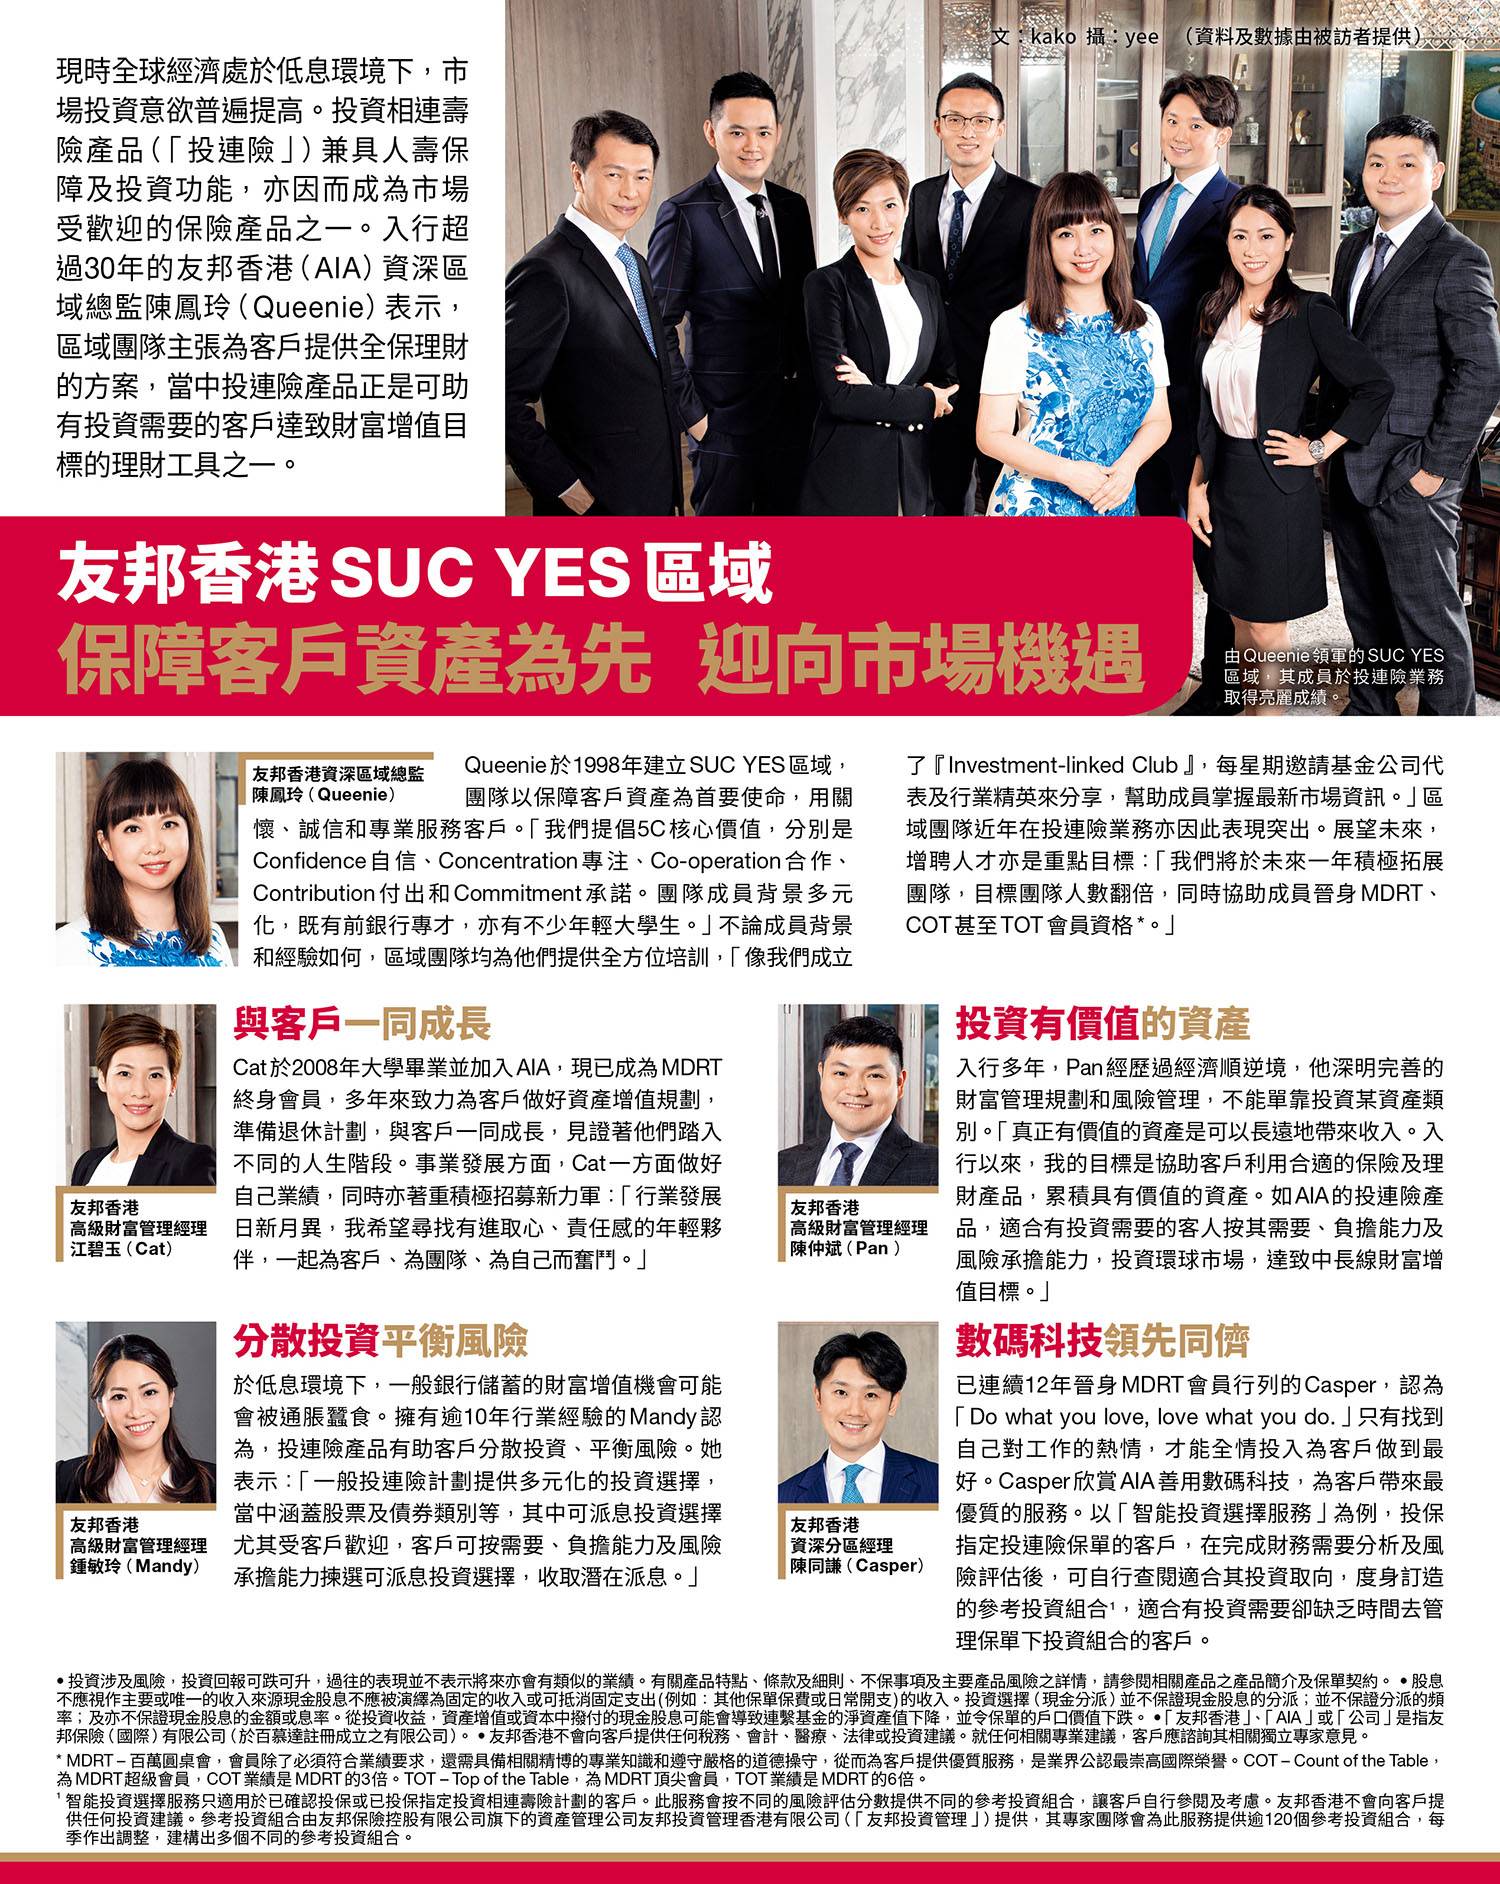 友邦香港SUC YES區域 保障客戶資產為先 迎向市場機遇